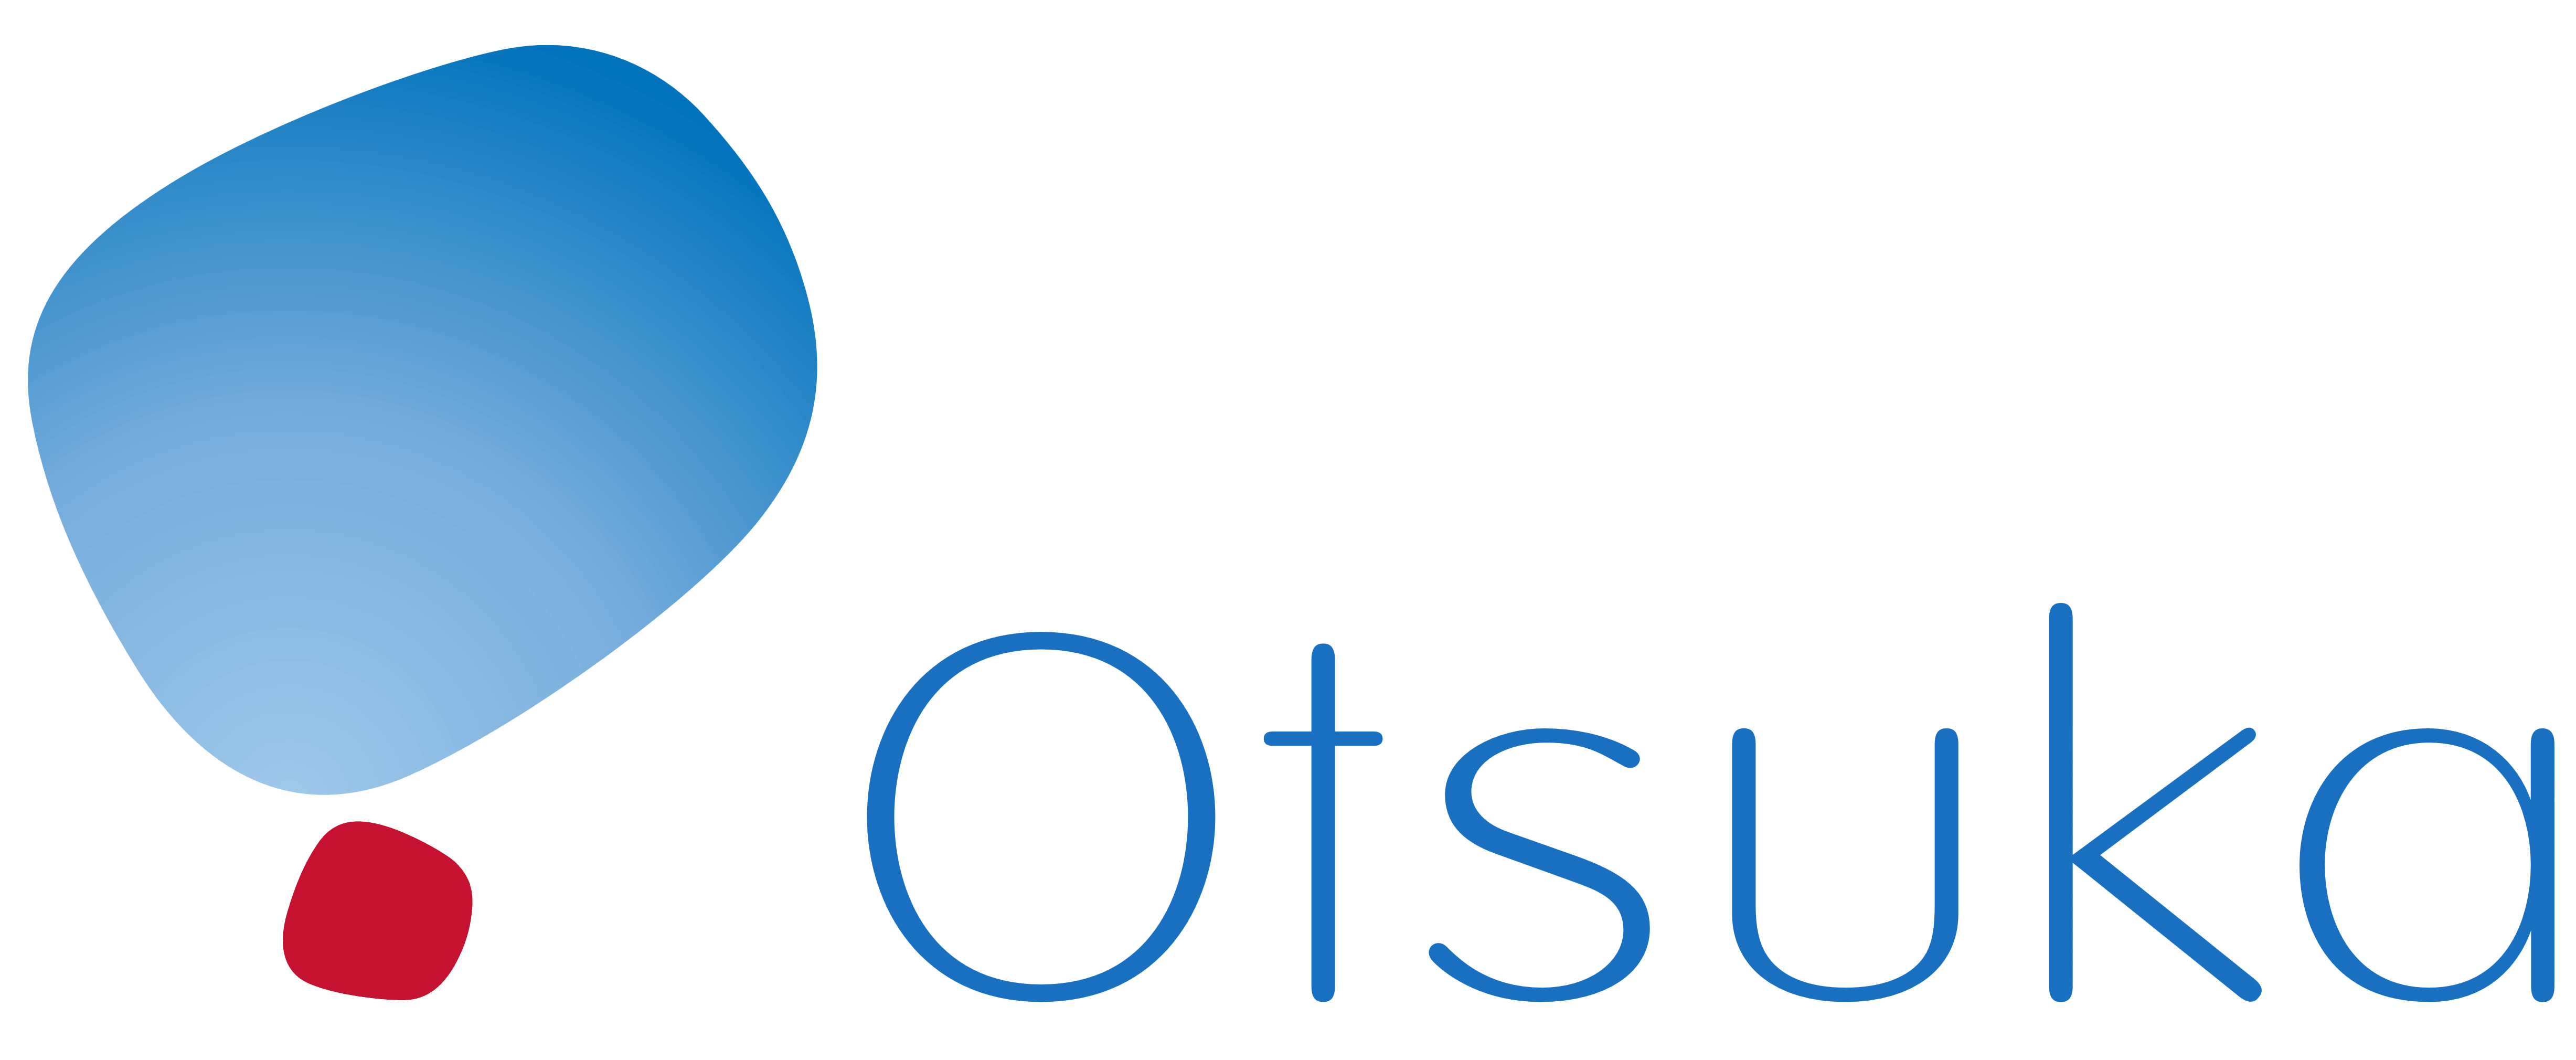 Otsuka logo, logotype